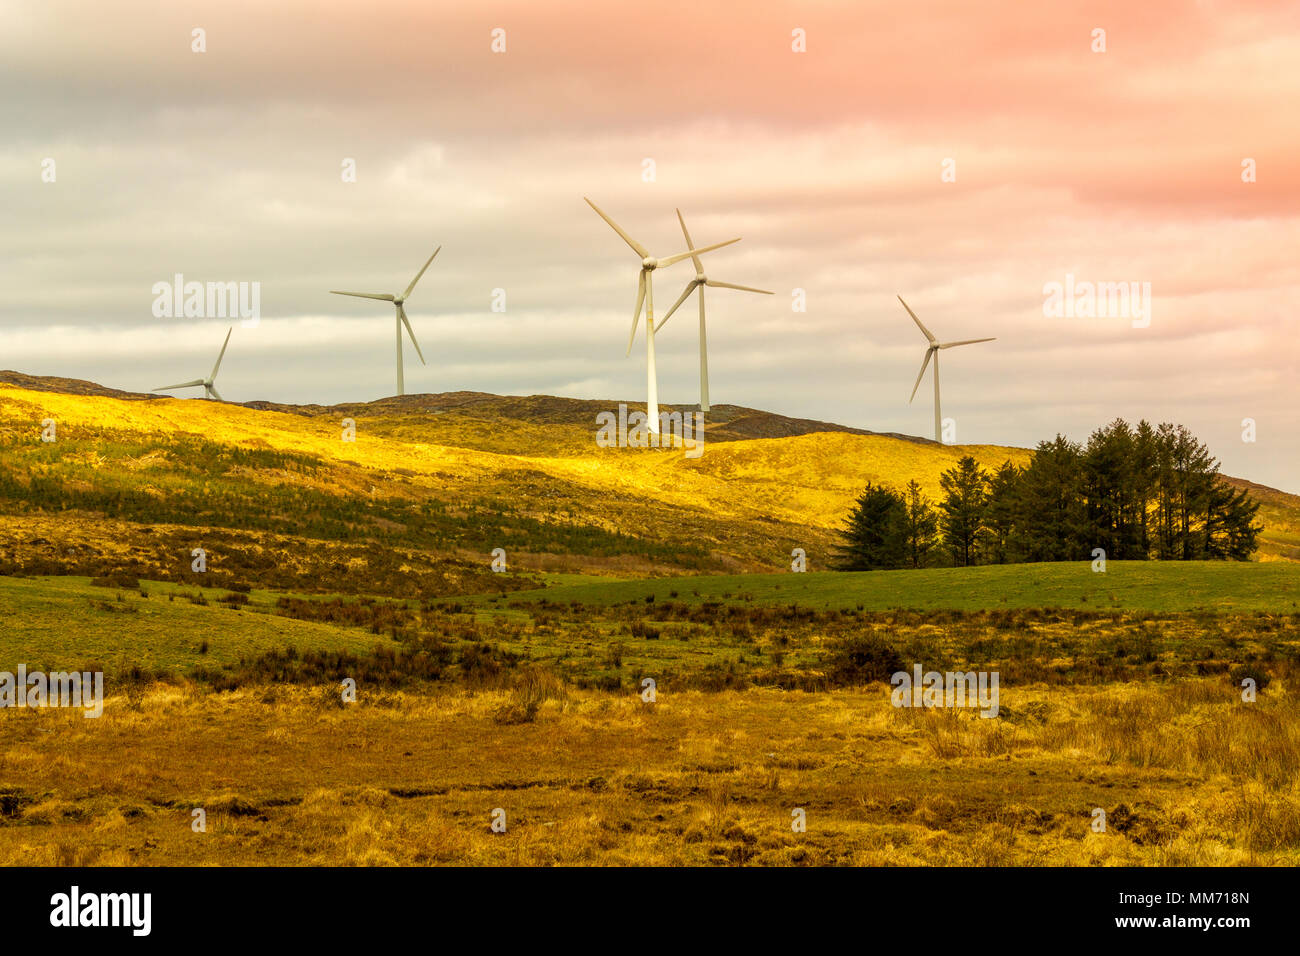 Les aubes de turbine tournant sur une ferme éolienne, d'éoliennes sur une colline de West Cork, Irlande Banque D'Images